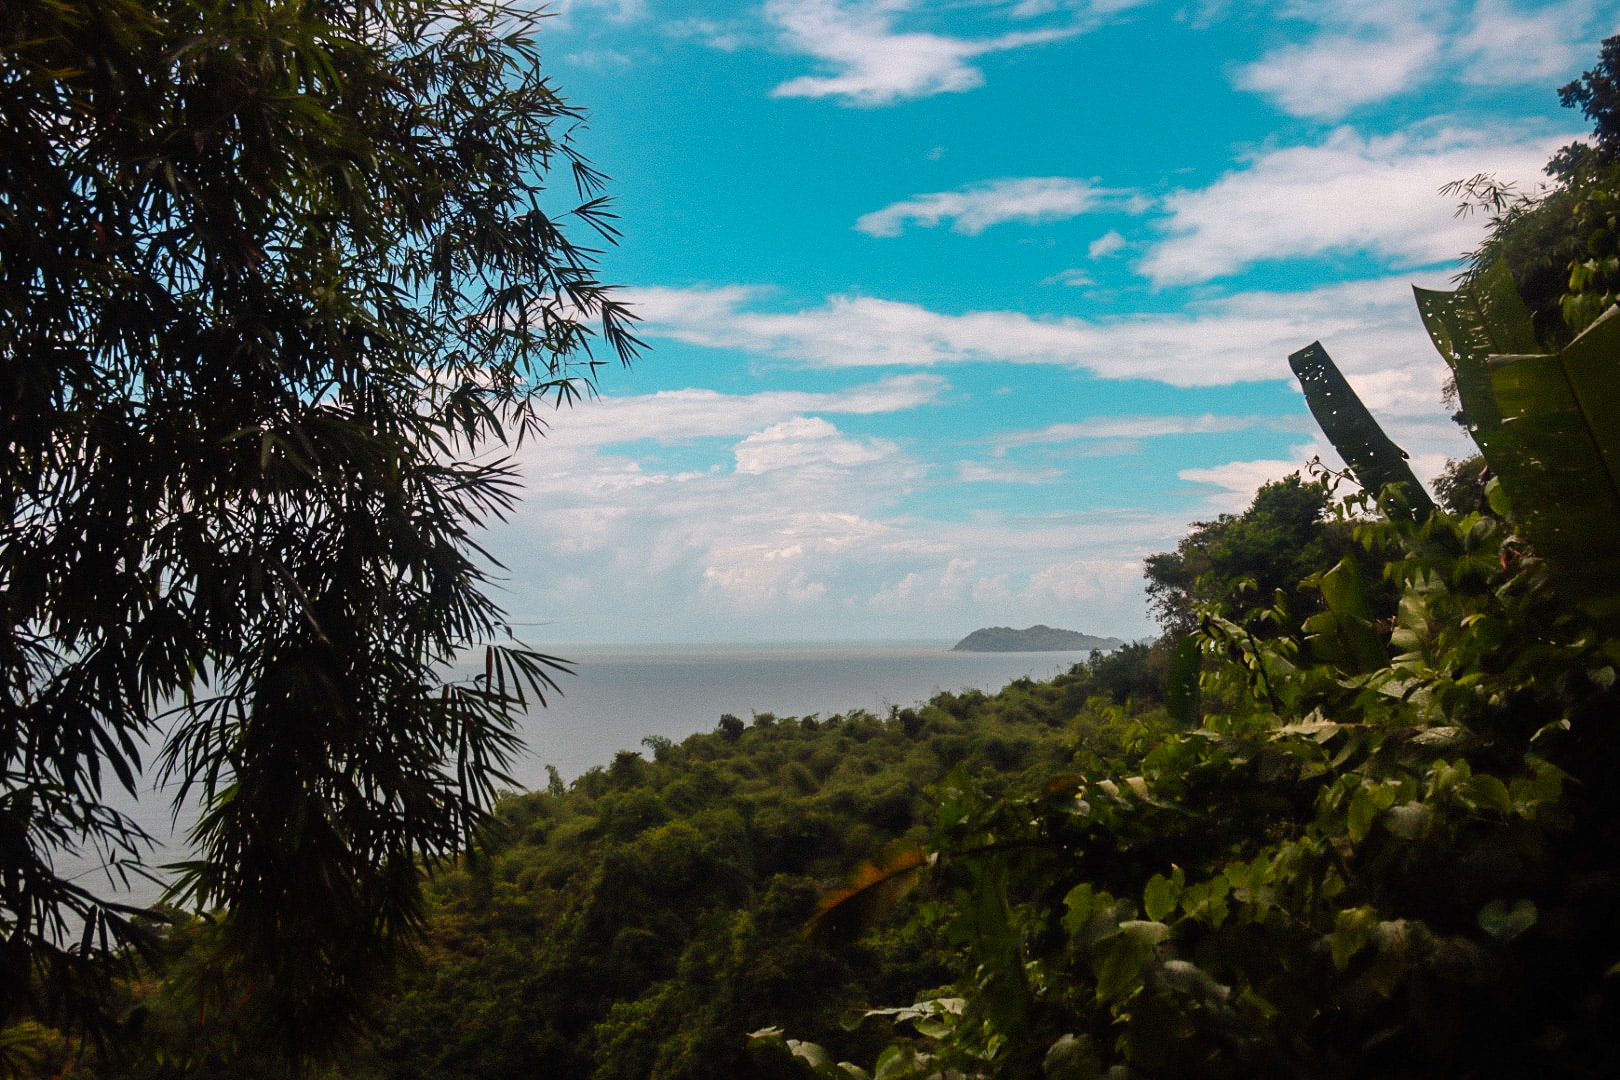 Prachtige uitzichten over de zee tussen het tropische regenwoud